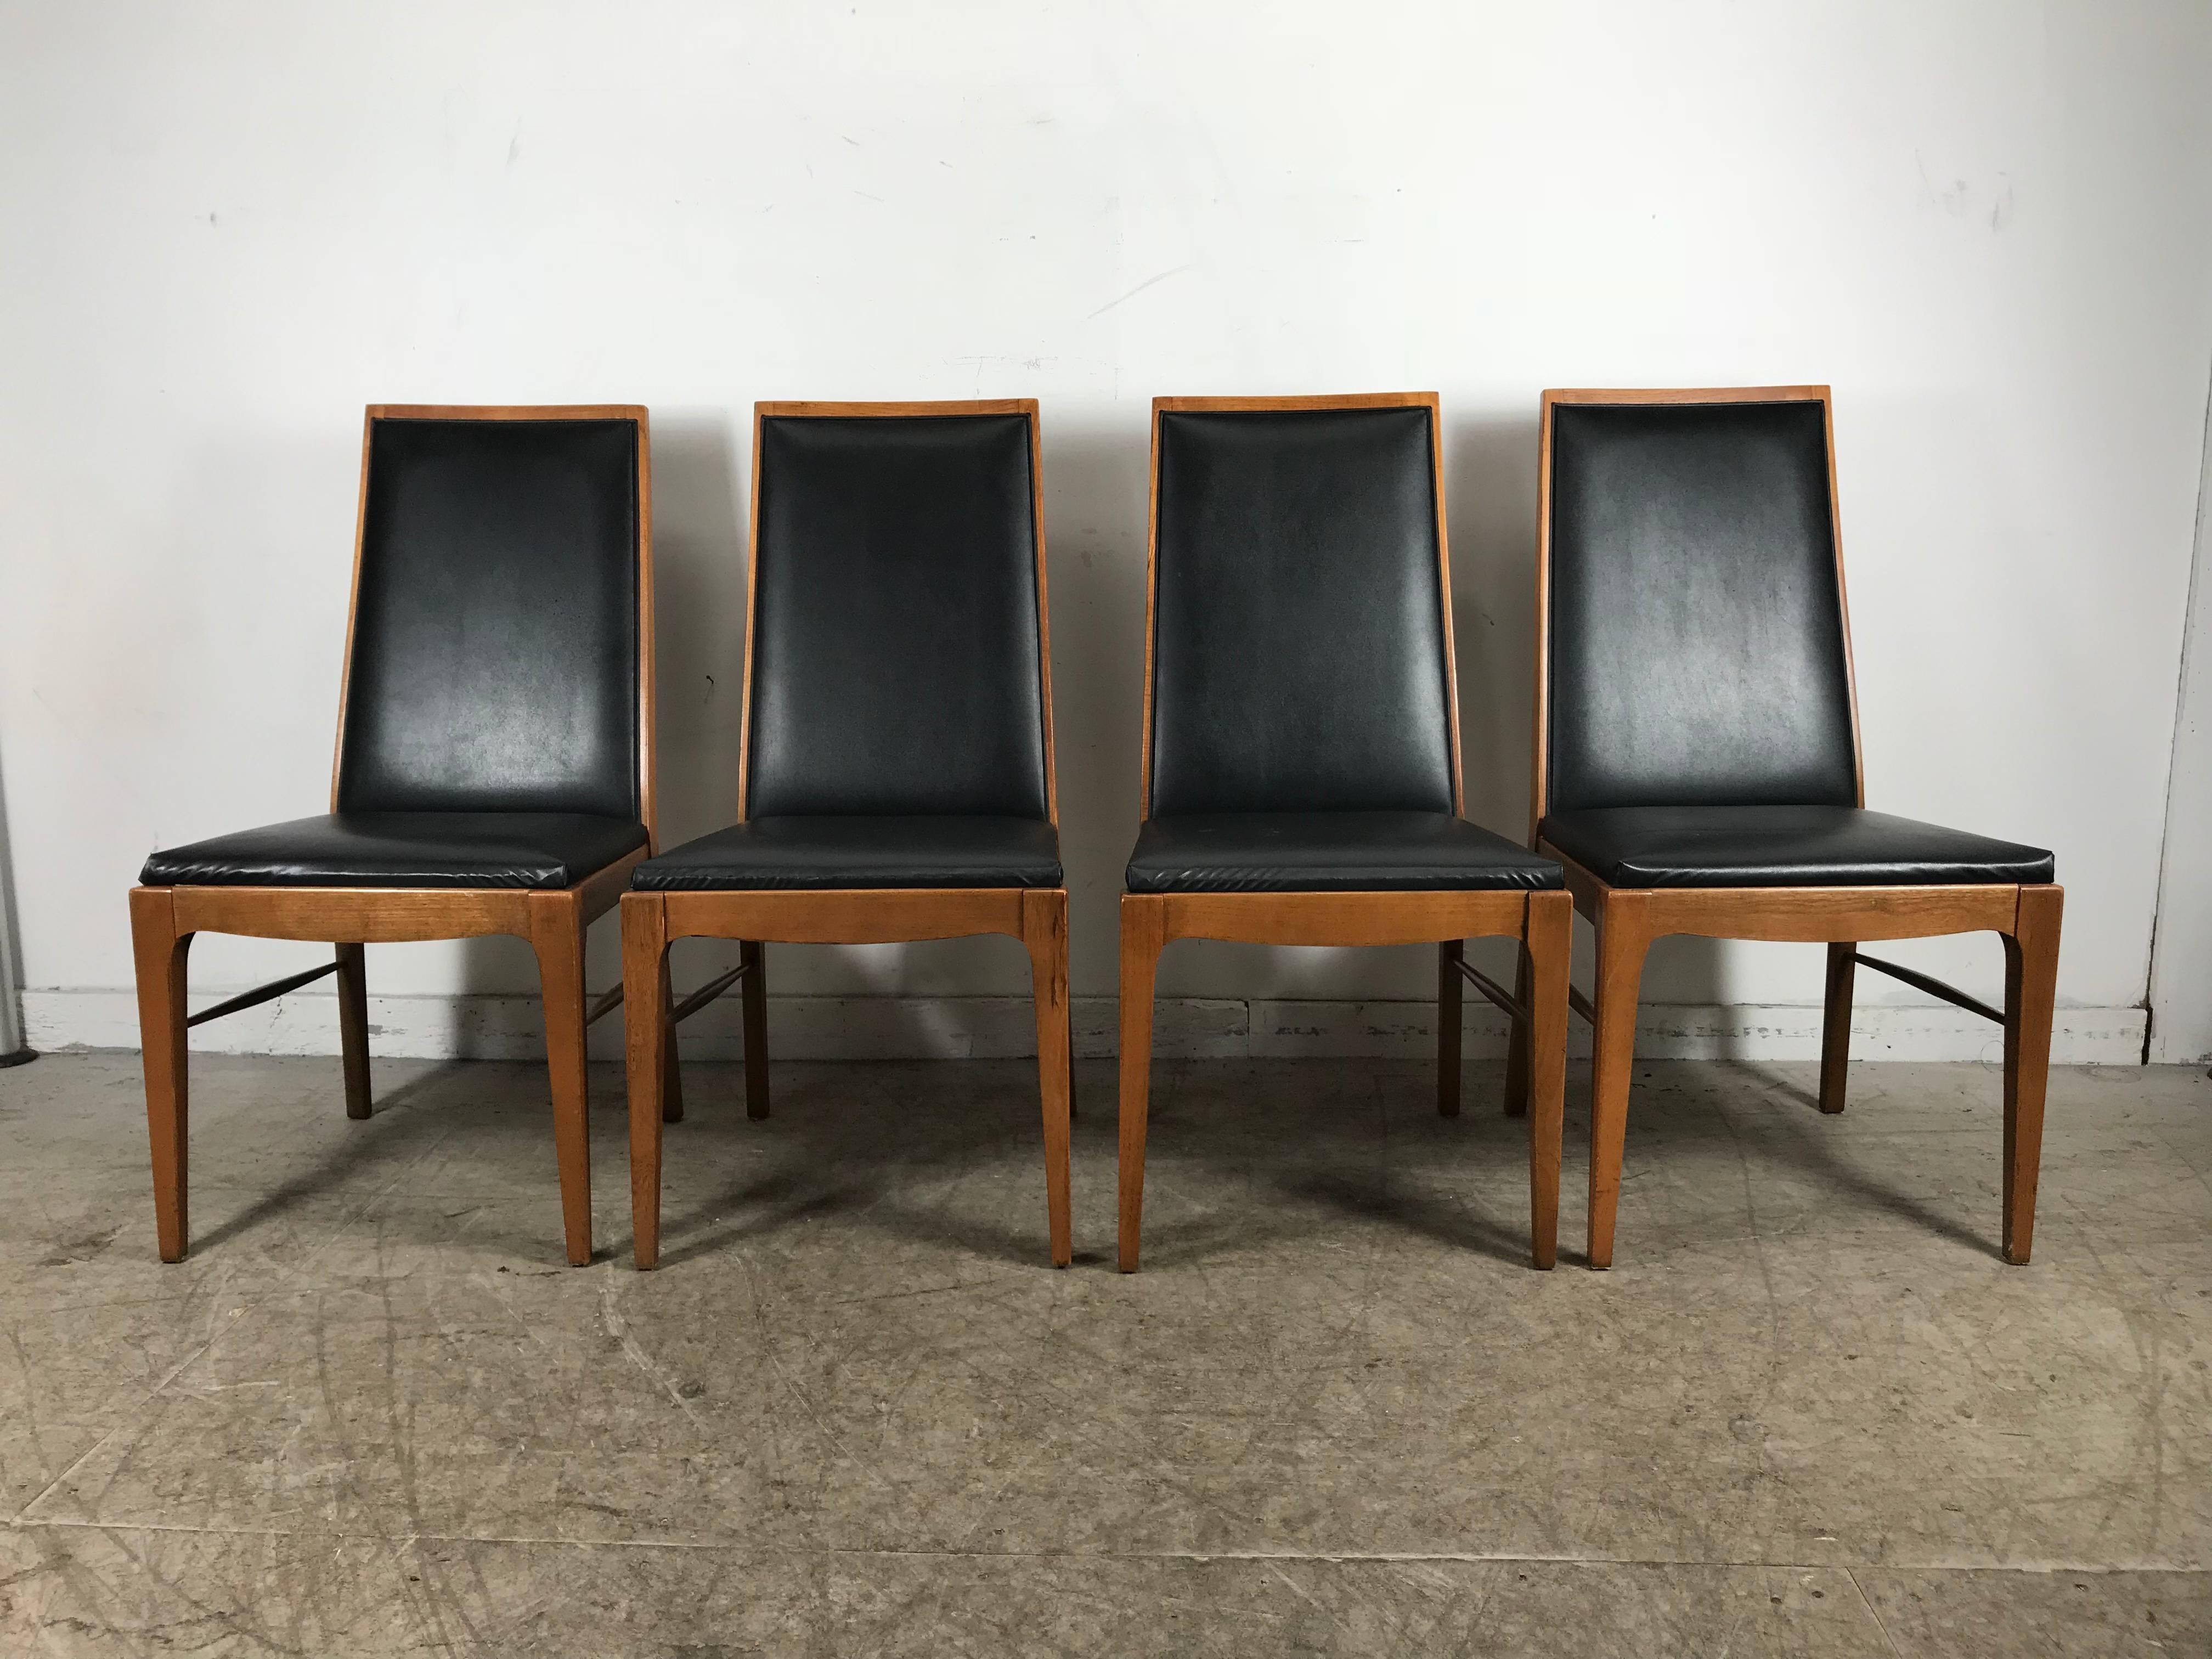 Ensemble de quatre chaises de salle à manger modernistes en noyer par Lane Classic, style simple et élégant, cadres en noyer massif, robustes, articulations serrées, extrêmement confortables. Livraison en main propre disponible à New York City ou